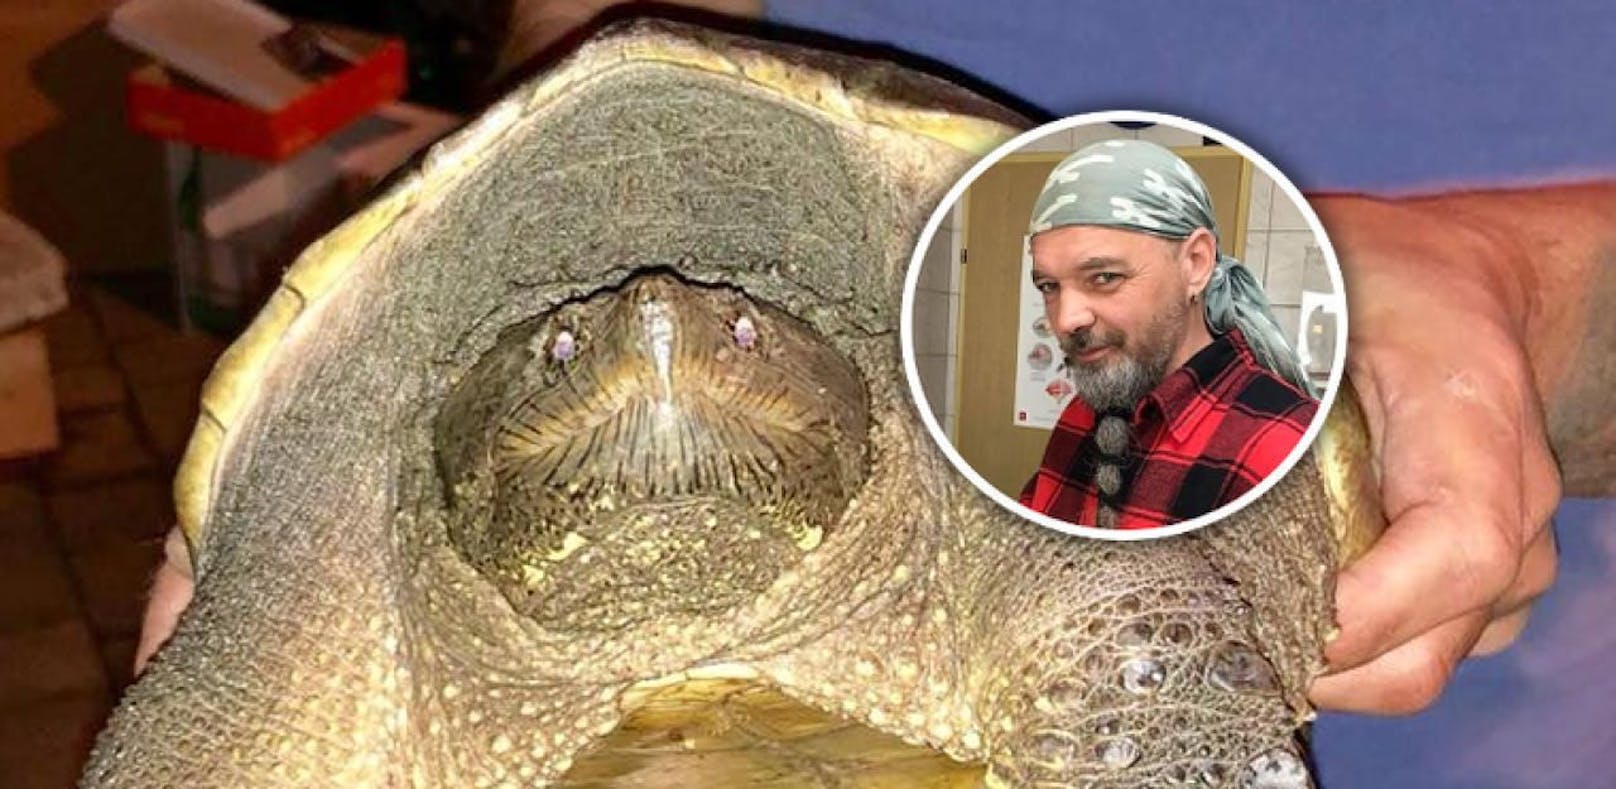 Bissig! Experte warnt vor gefundenen Schildkröten